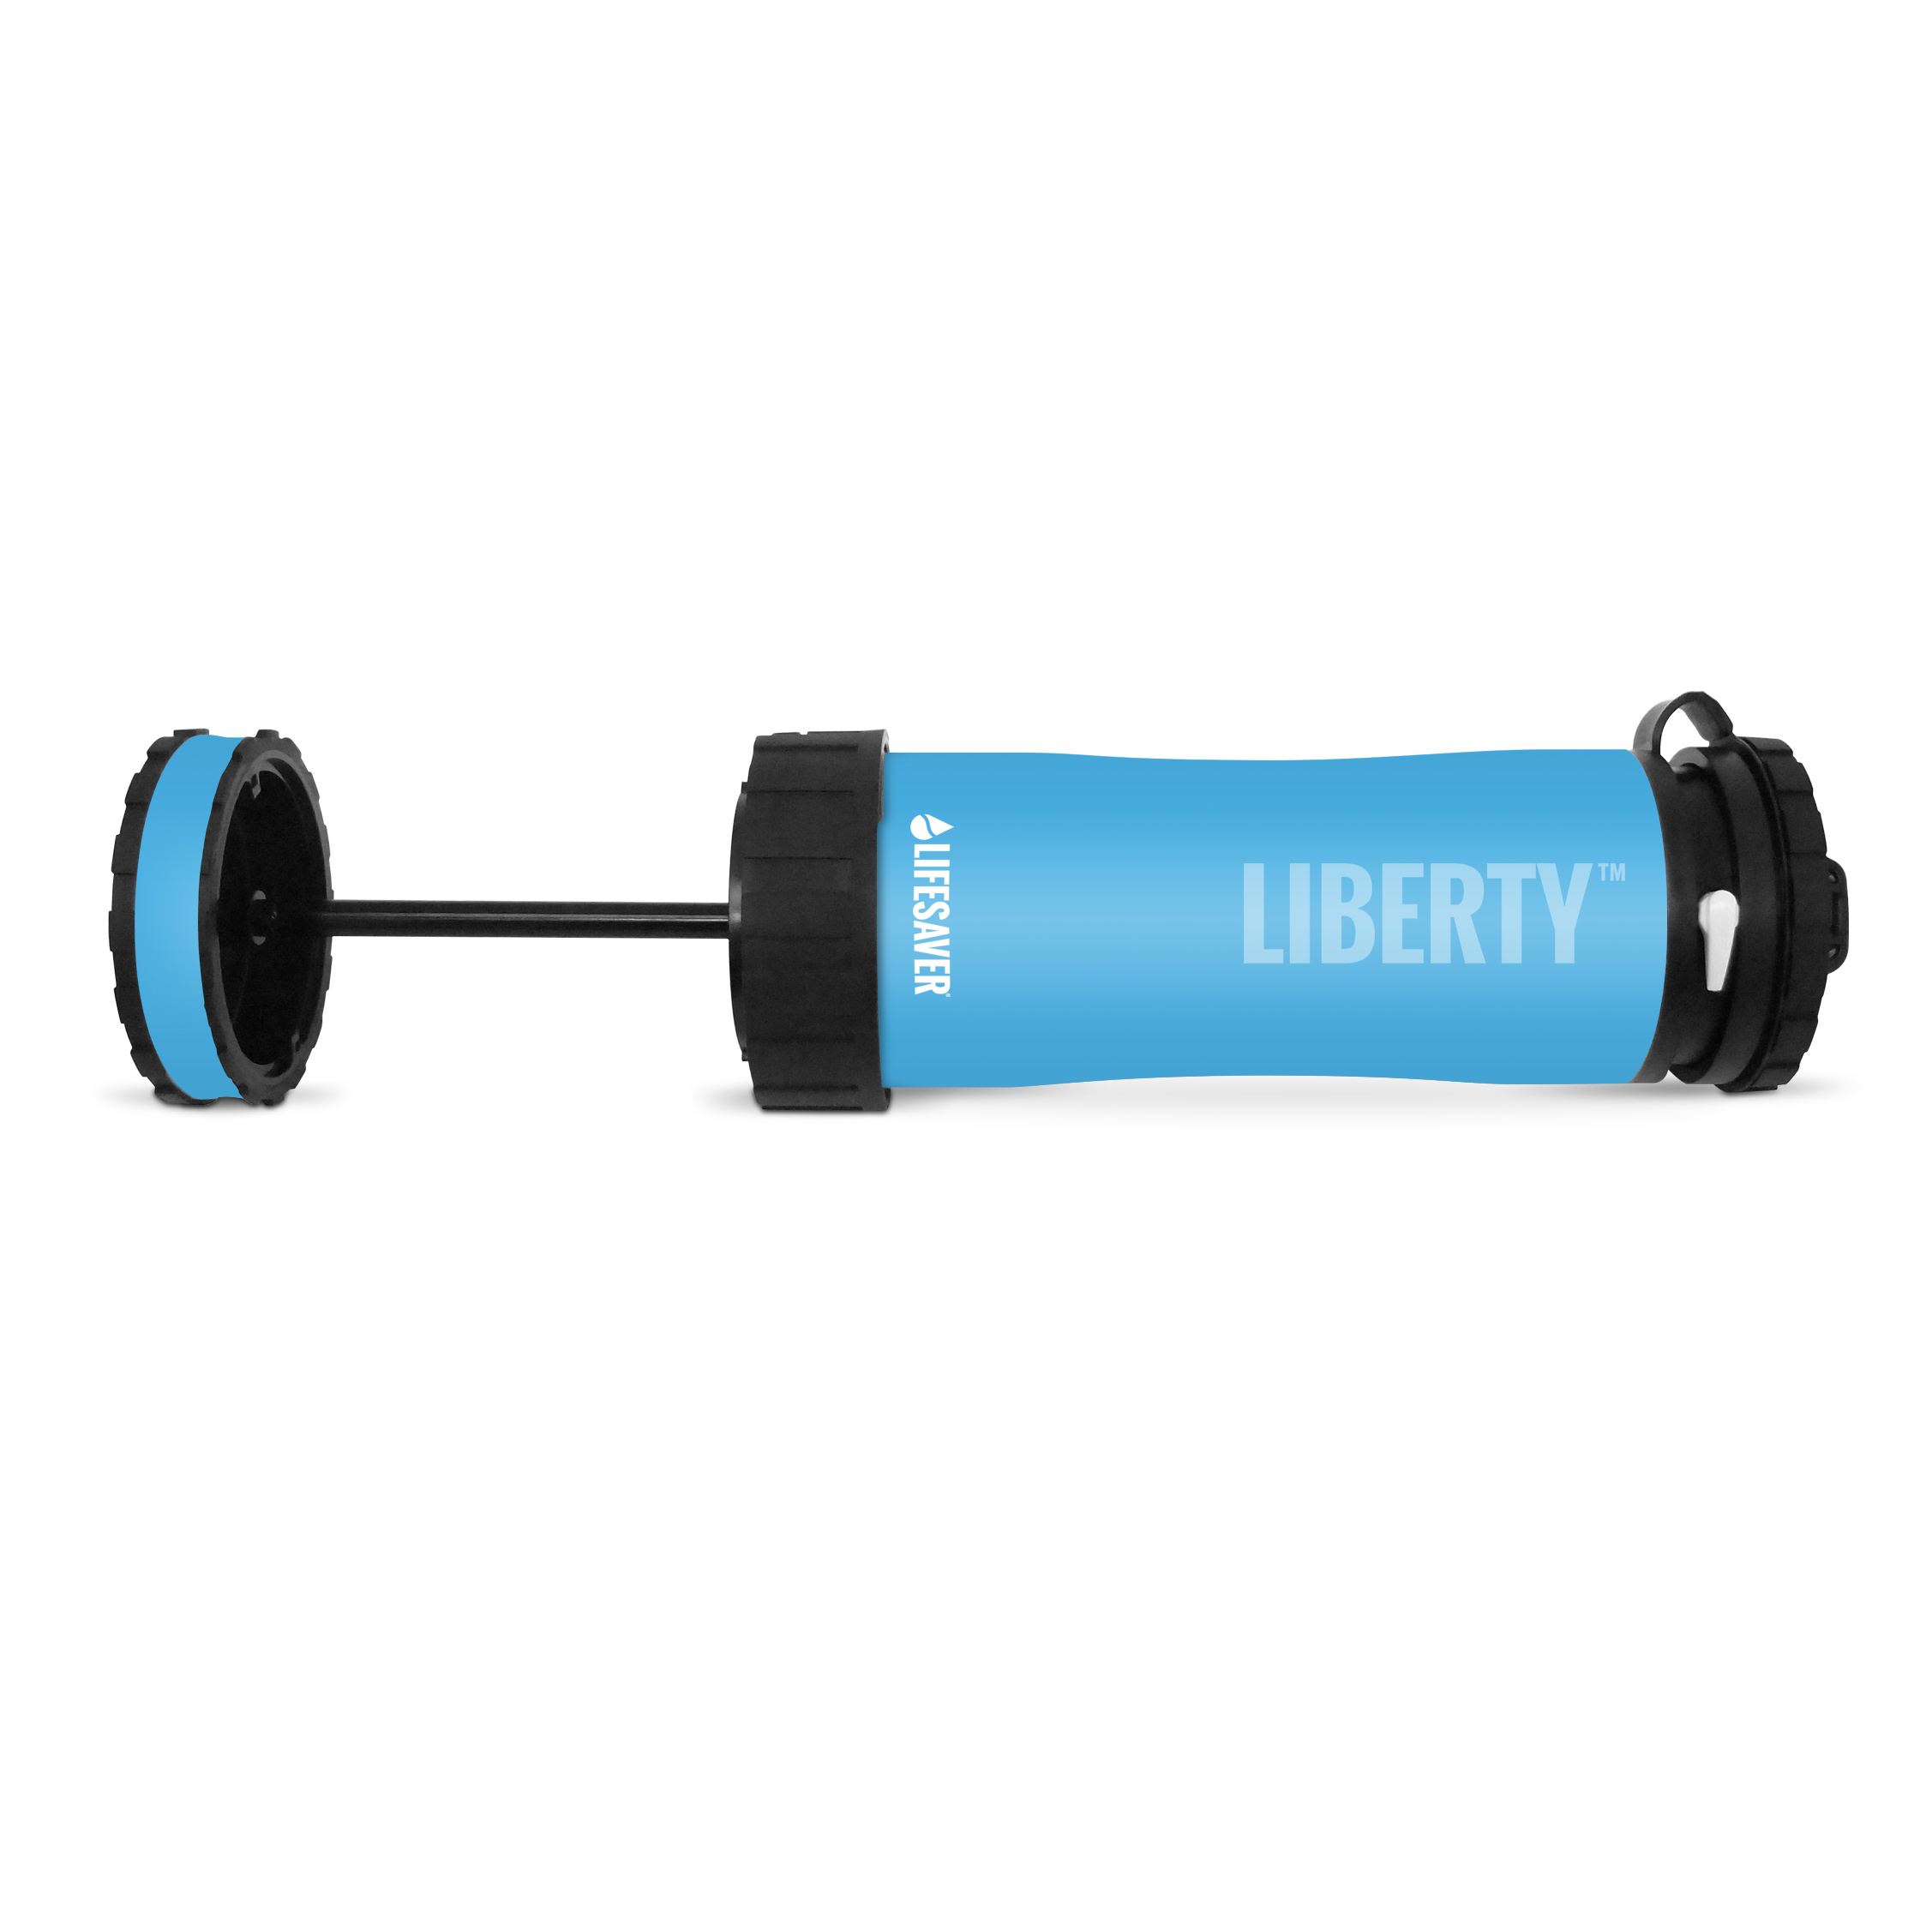 Der neue Lifesaver Liberty Outdoor- & Krisenwasserfilter